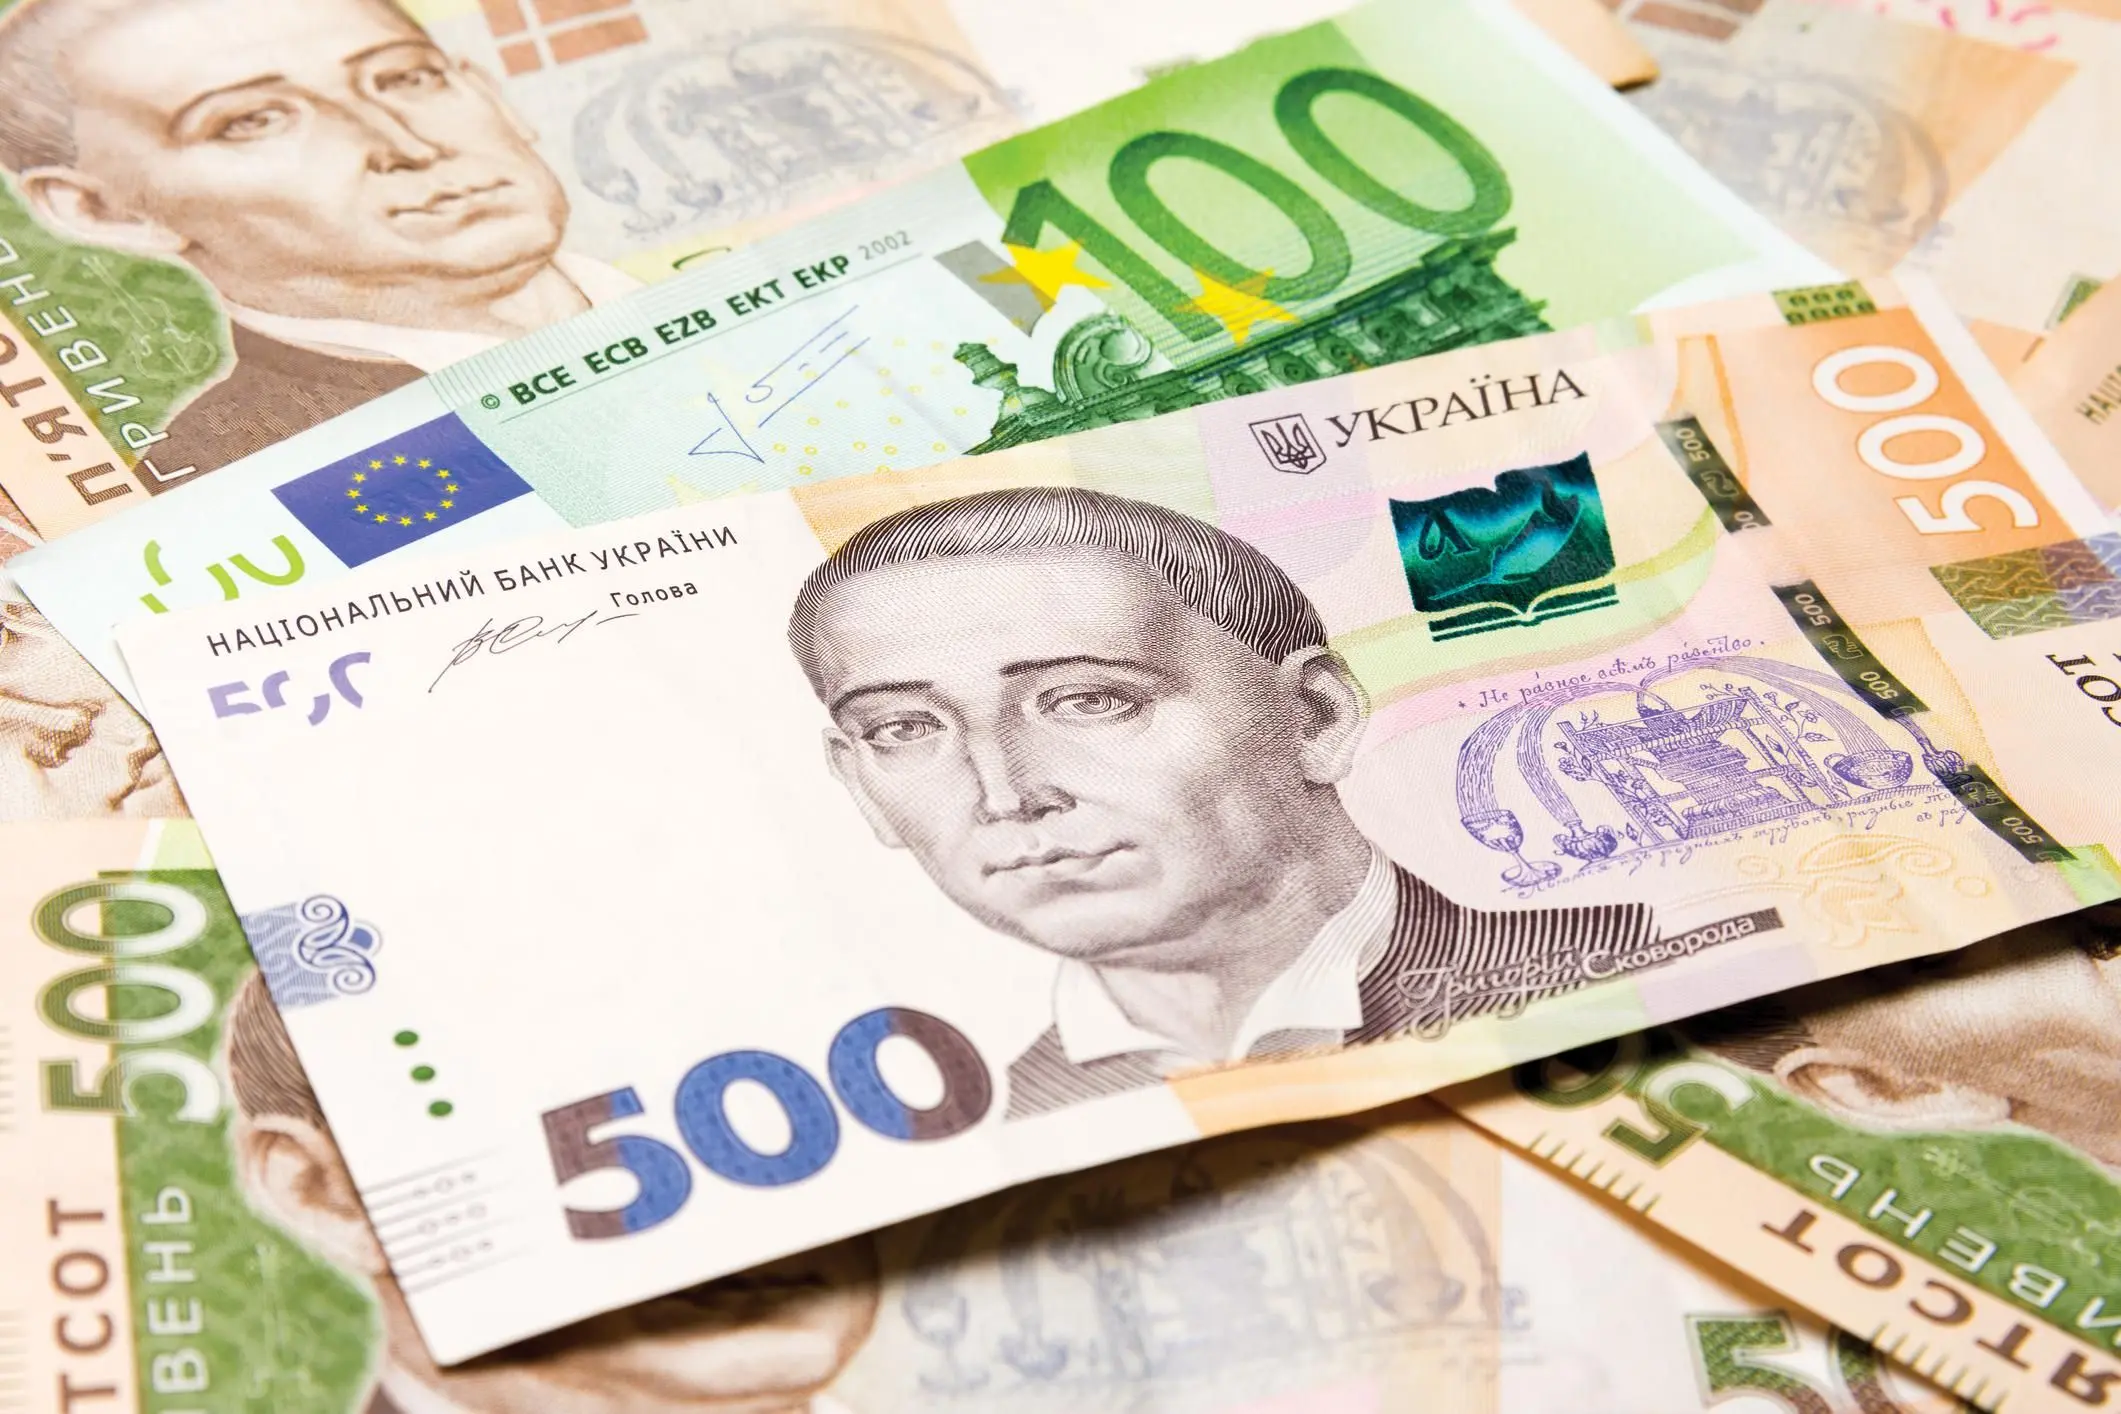 Євро може замінити долар в Україні і викликати радикальні зміни, які вплинуть на всіх.